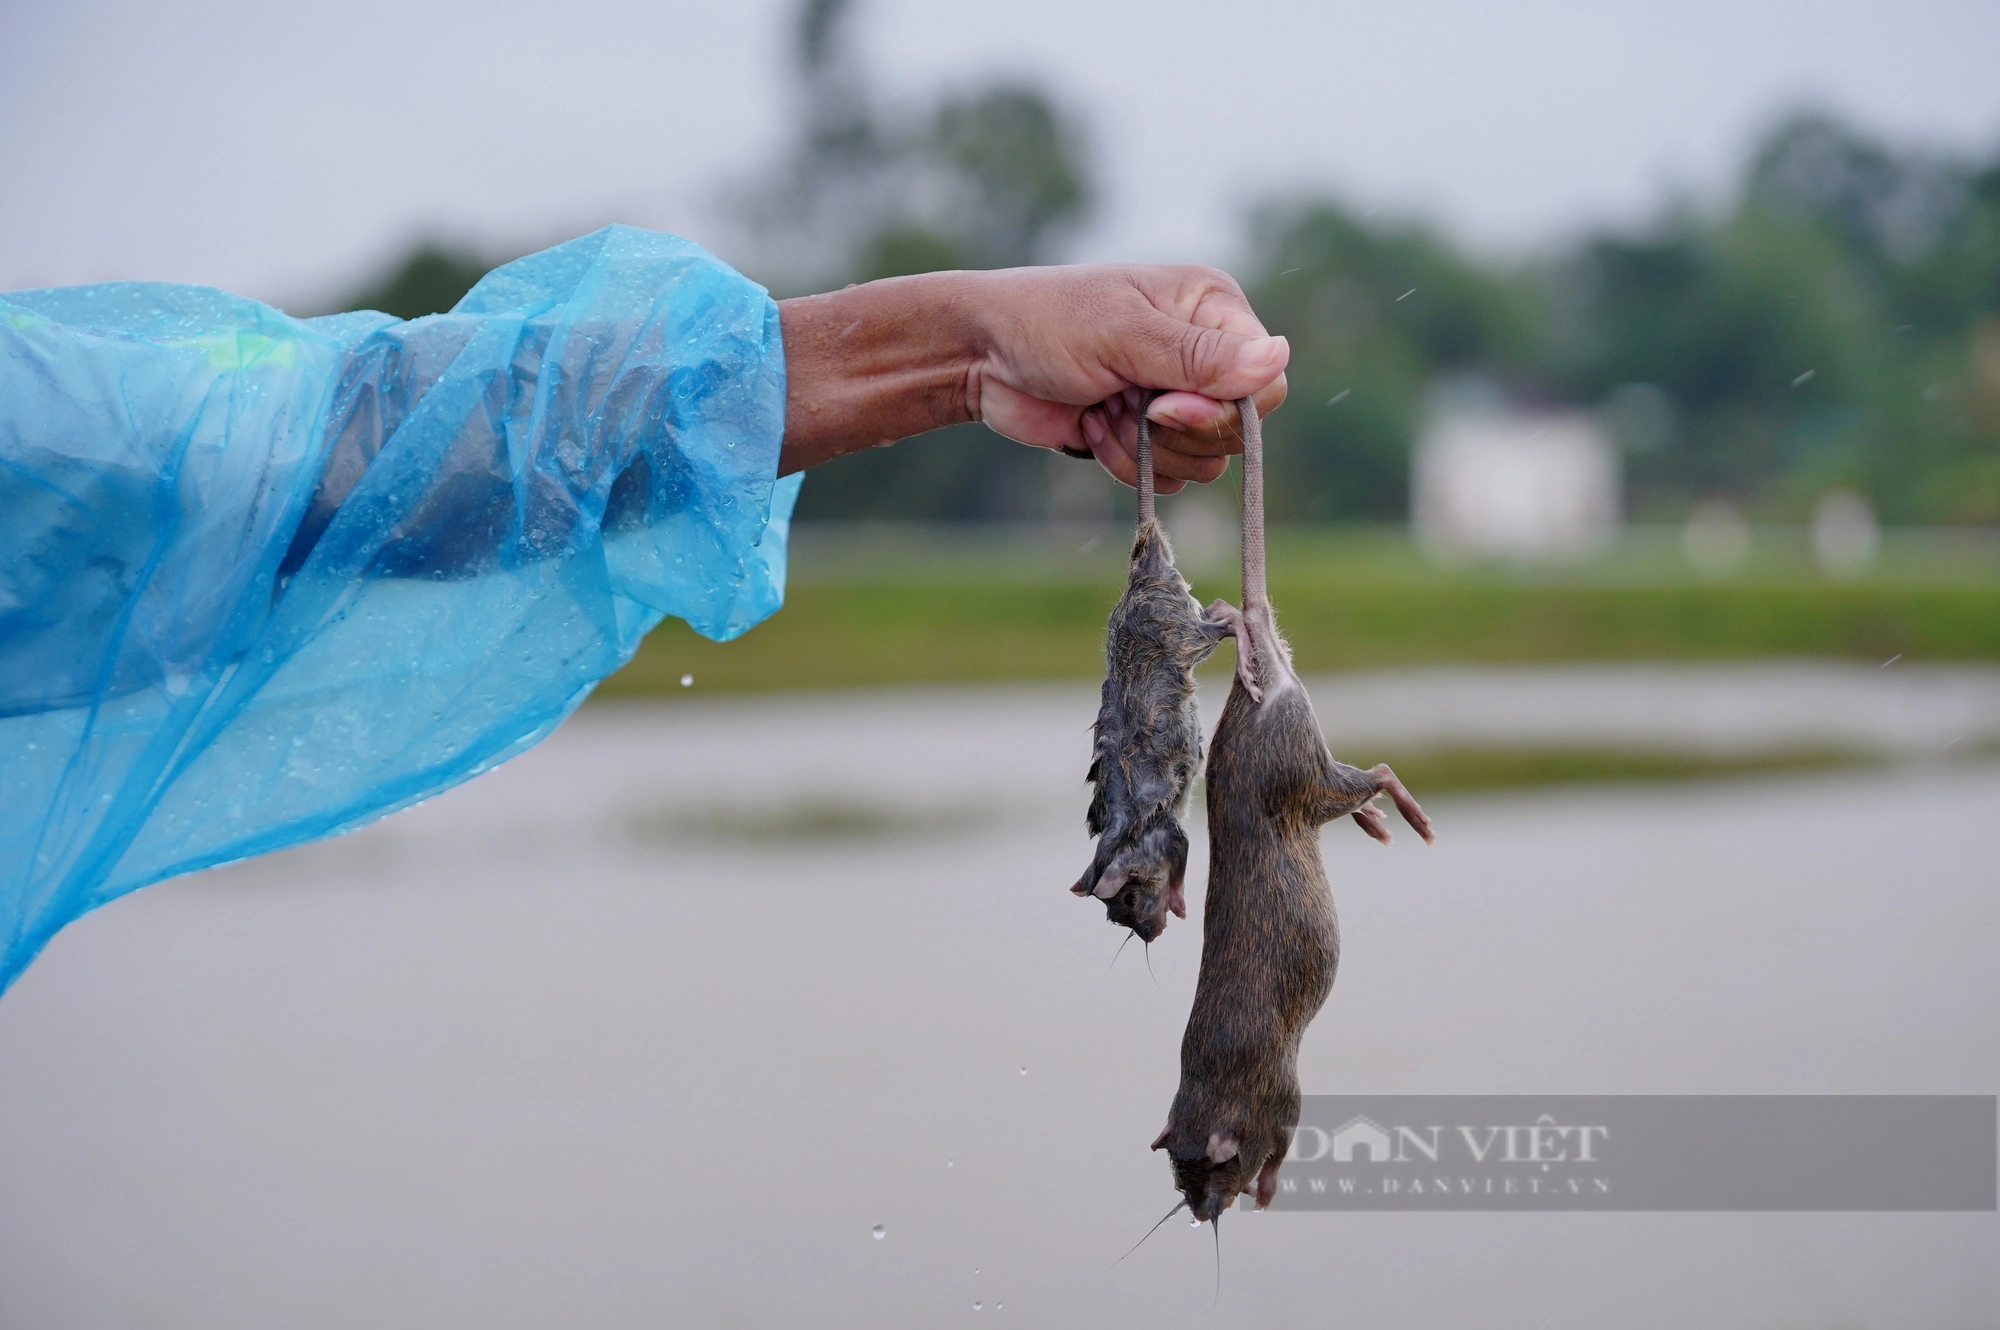 Cả làng ở Hà Tĩnh “đội mưa” cùng nhau lội nước đi bắt chuột bảo vệ mùa màng - Ảnh 11.